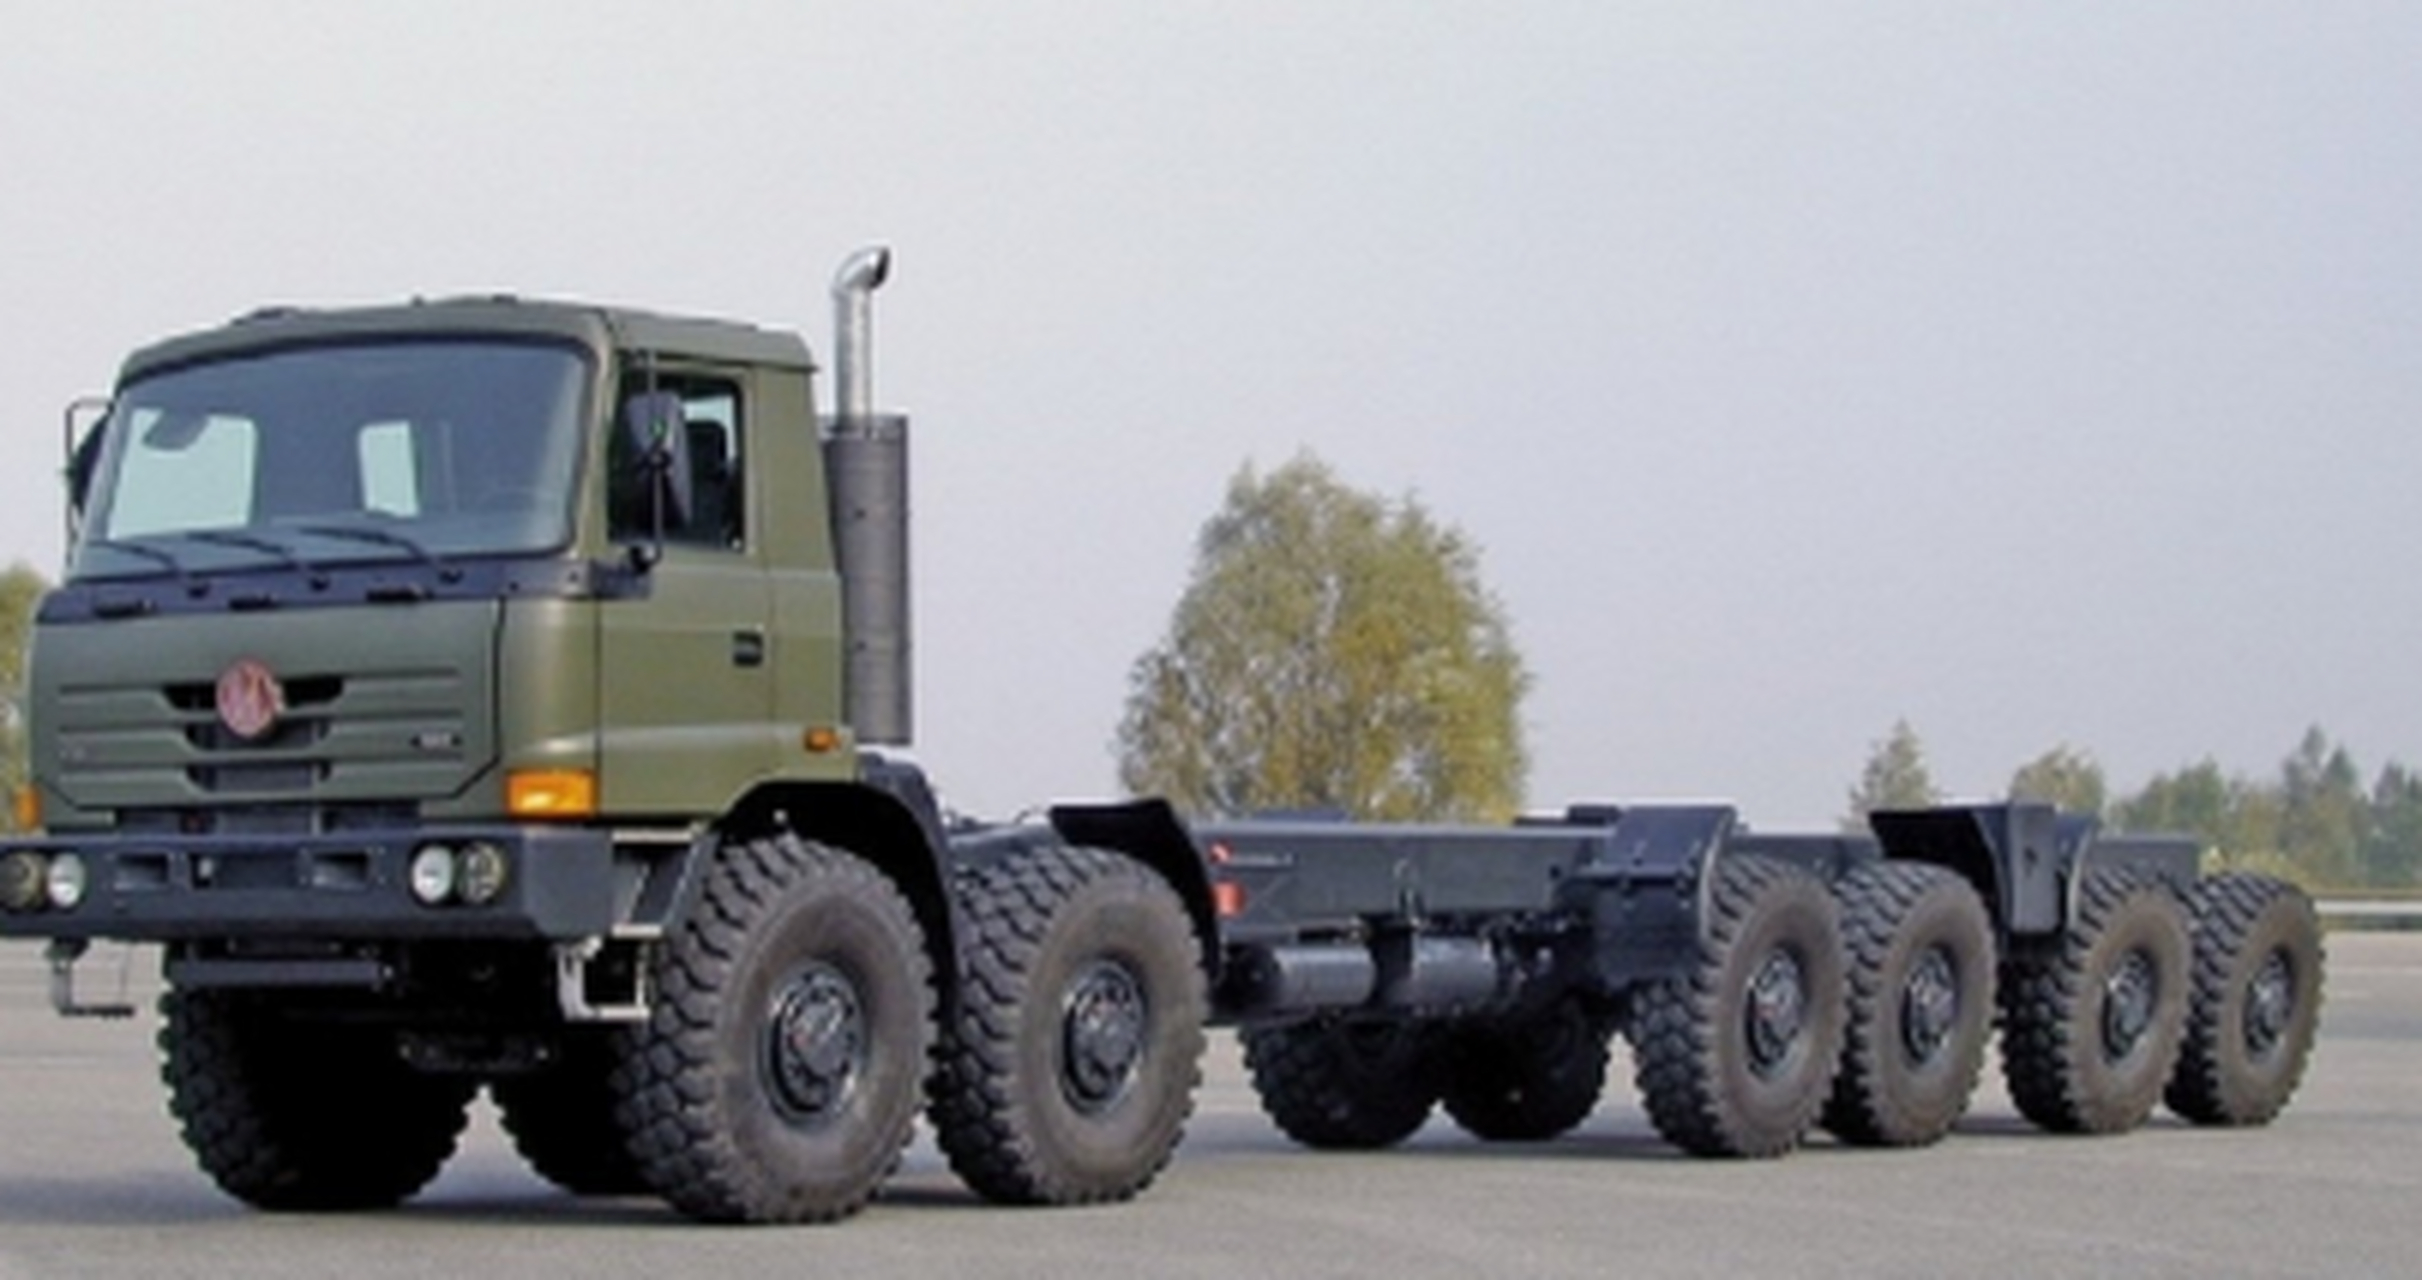 雄风3换太脱拉卡车,用于云峰导弹 捷克似乎和蔡当局准备达成部分武器